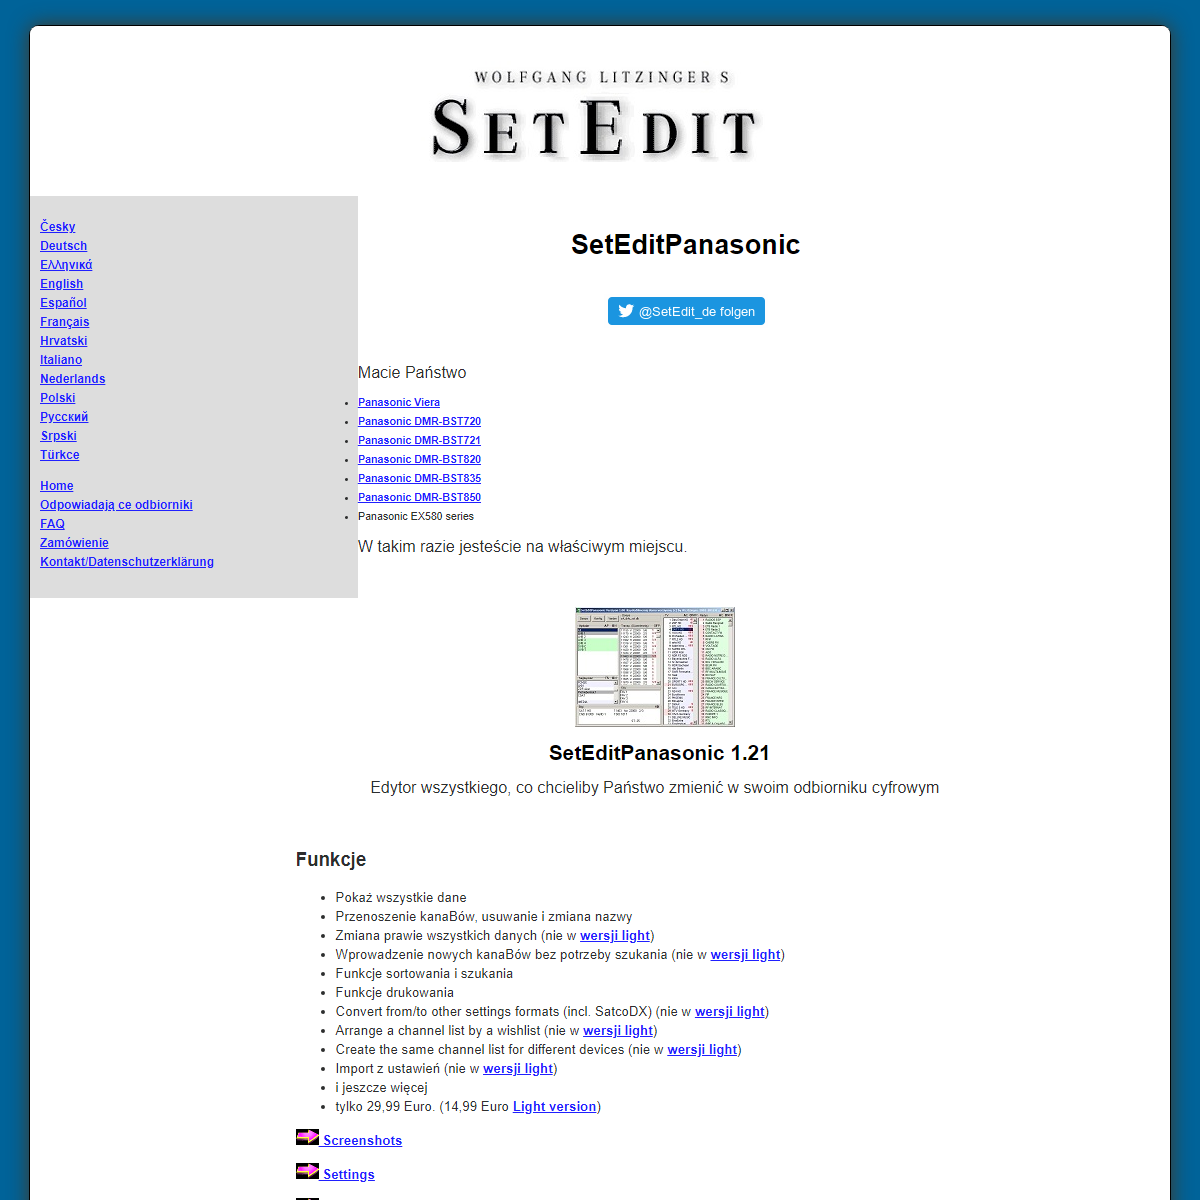 A complete backup of https://www.setedit.de/SetEdit.php?spr=5&Editor=136